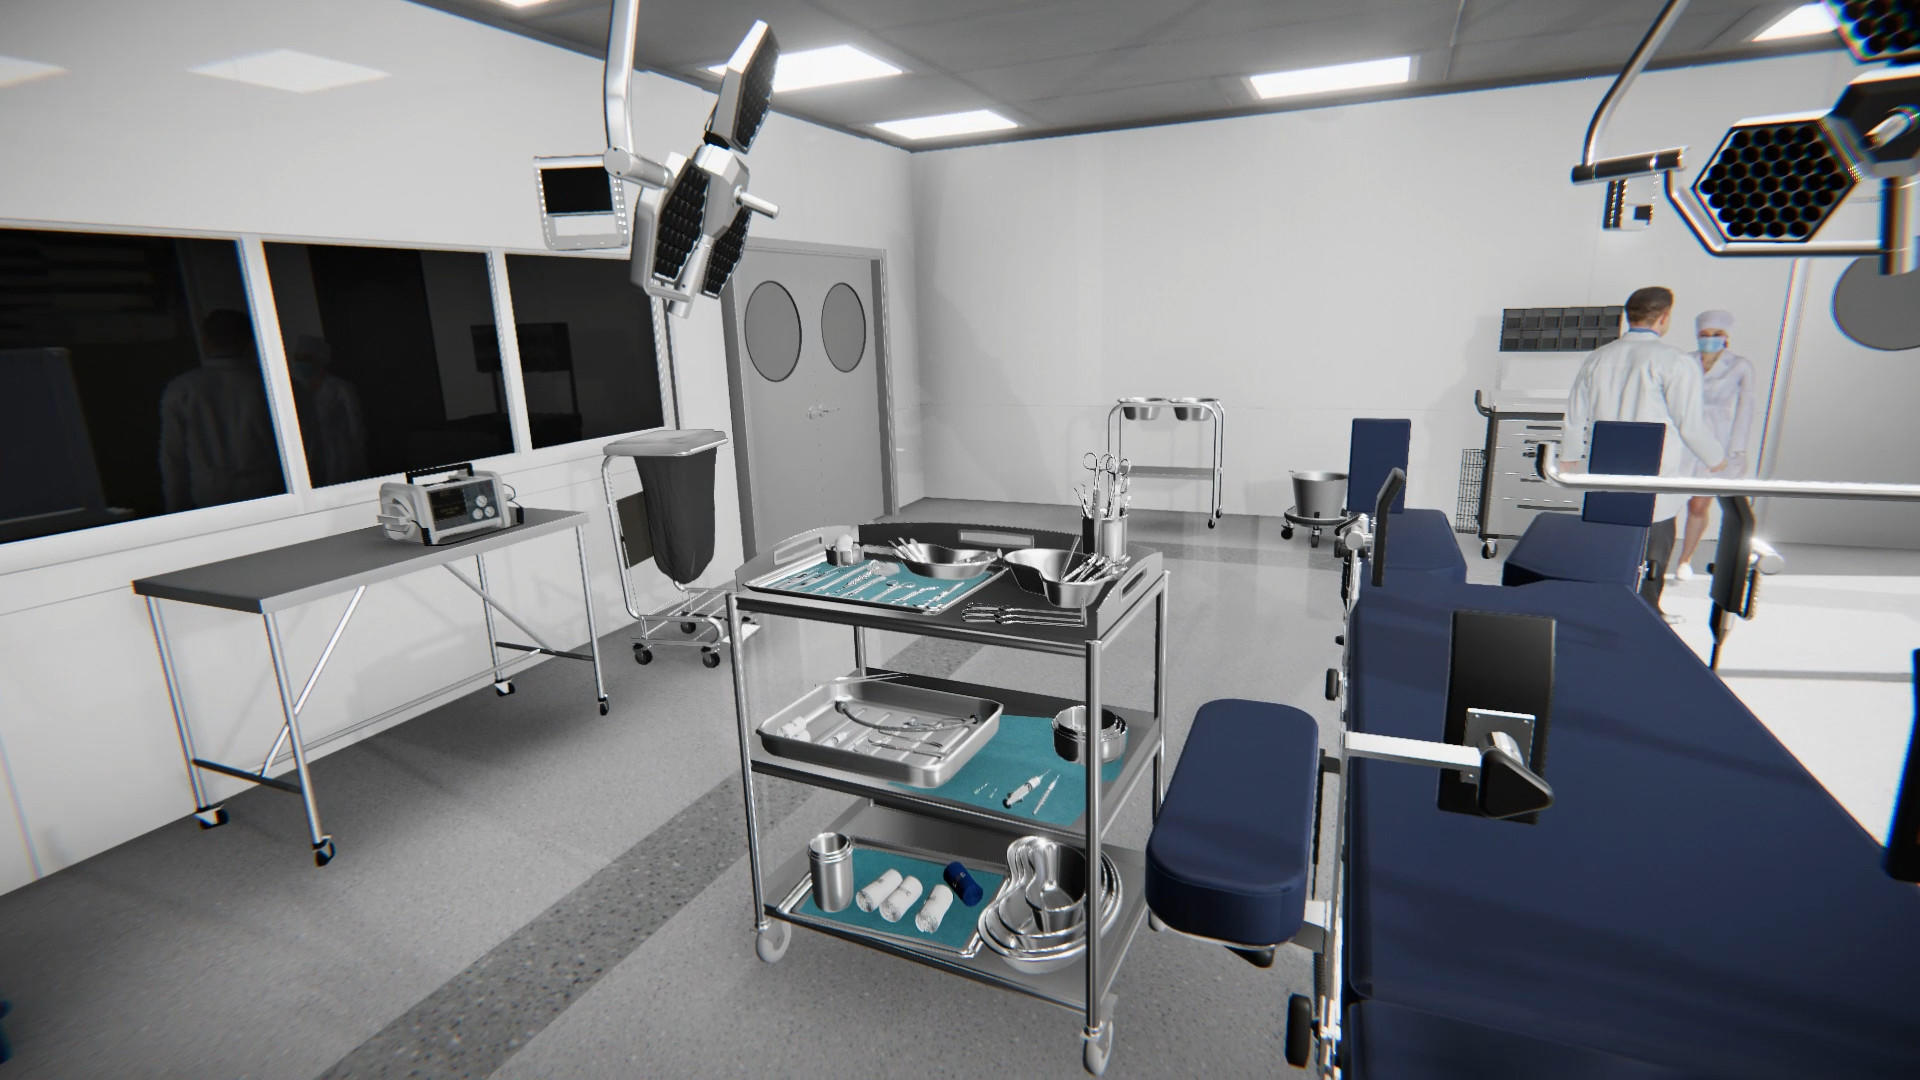 Screenshot of Doctor Simulator